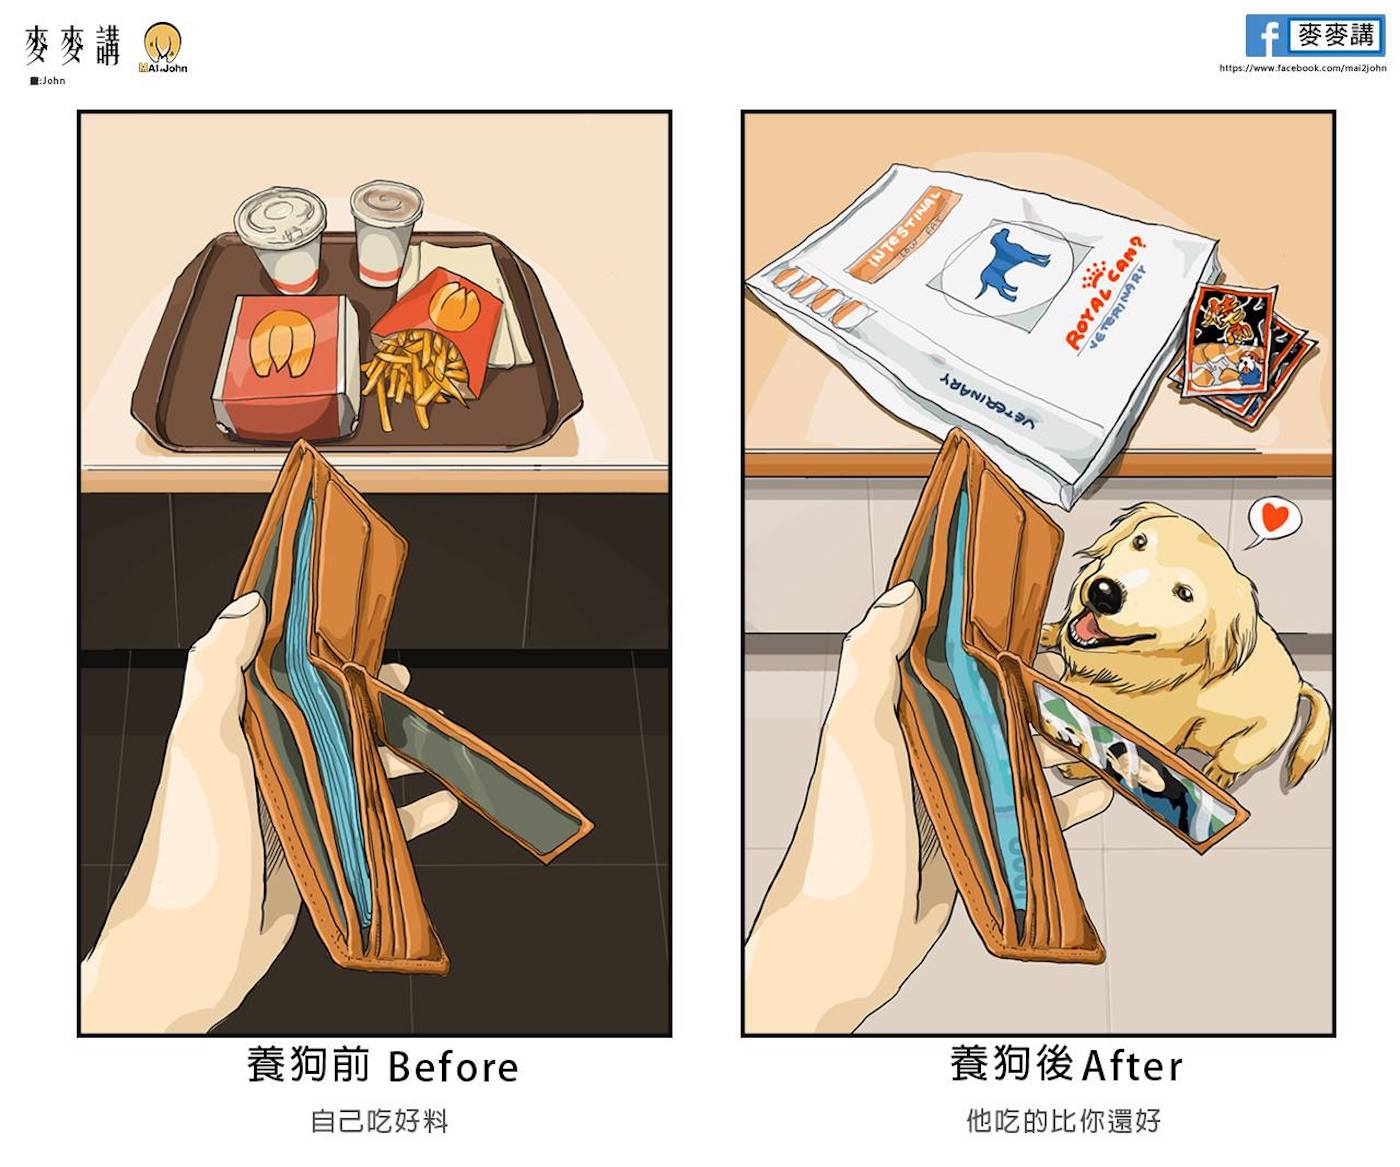 La vie avec et sans animaux de compagnie par l'illustrateur taïwanais mai2john.